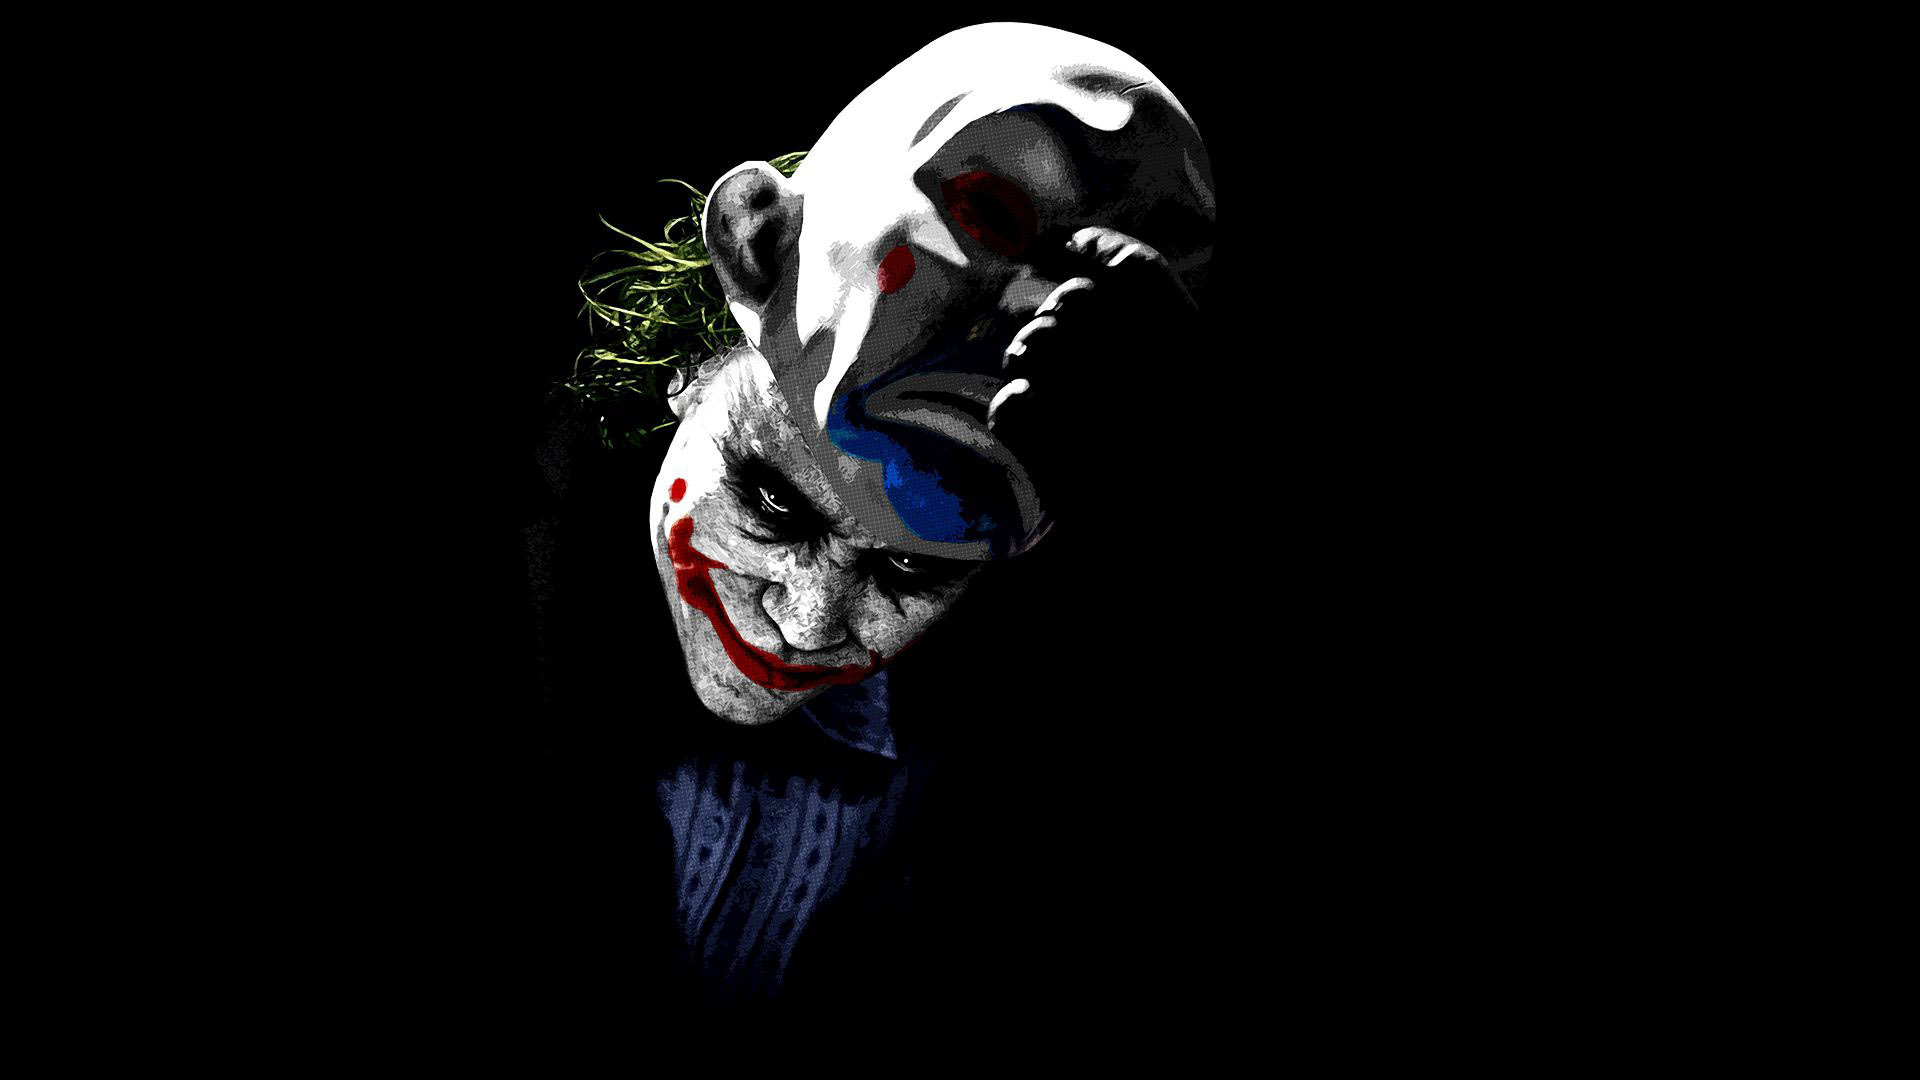 The Joker   The Dark Knight wallpaper 20431